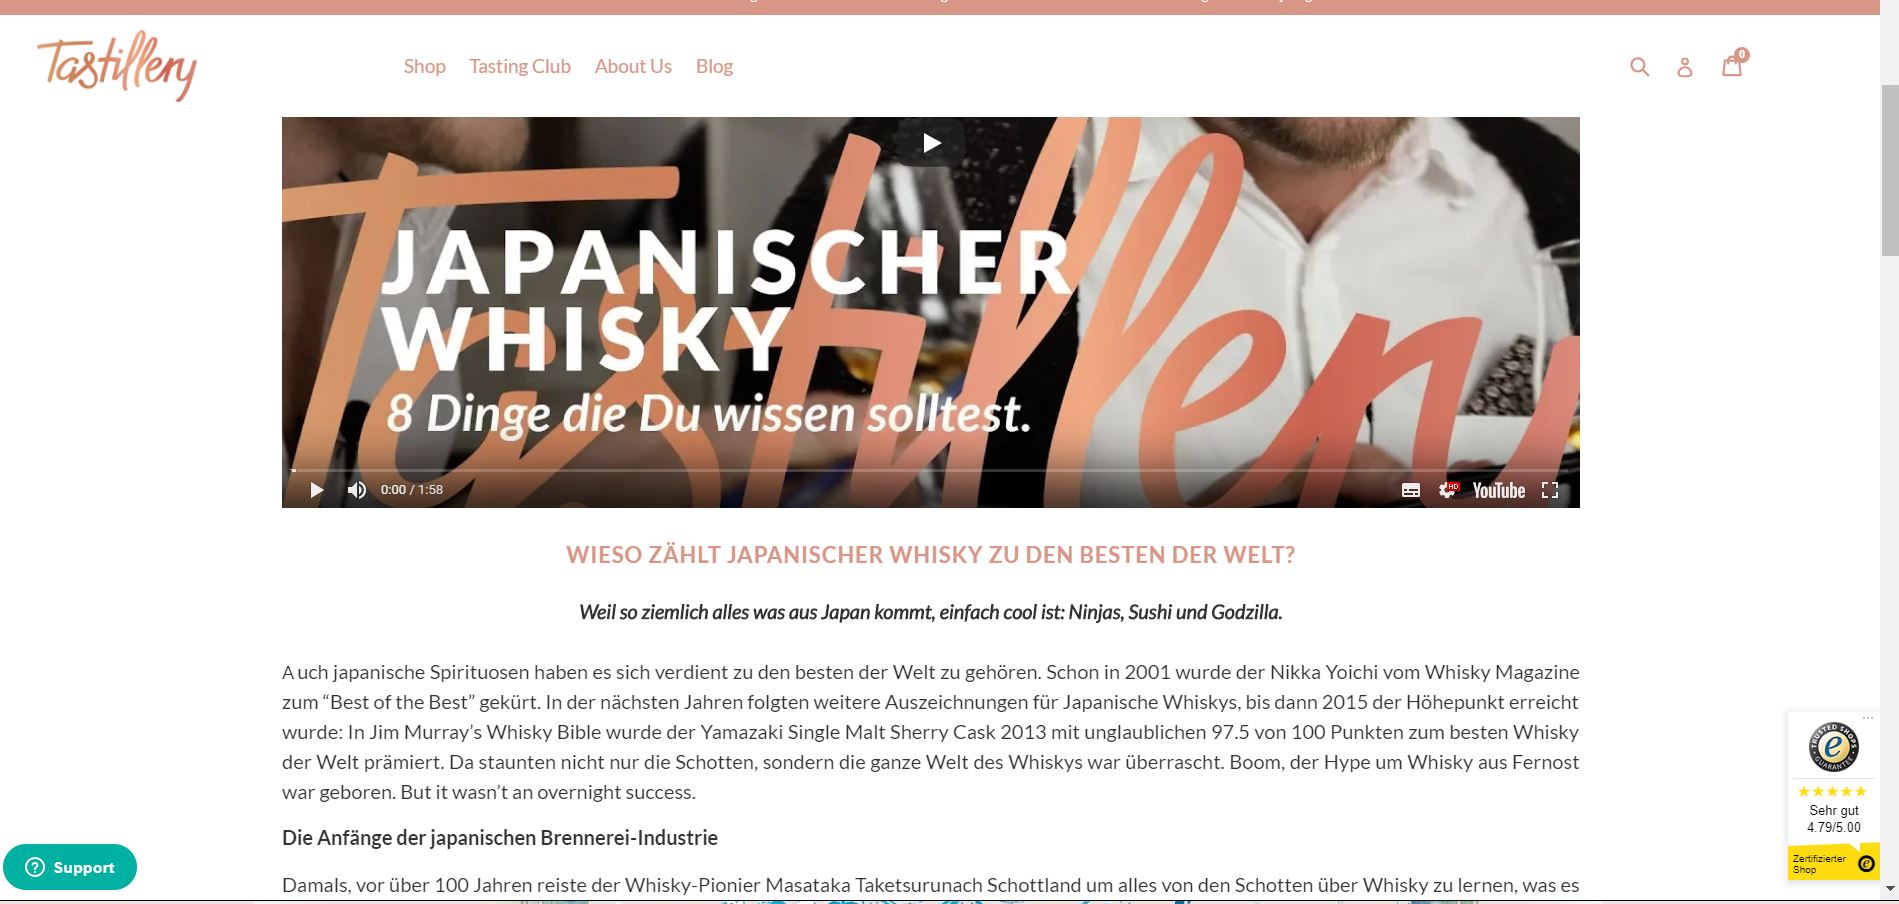 Shopify Händler Tastillery führen einen Rezepte-Blog